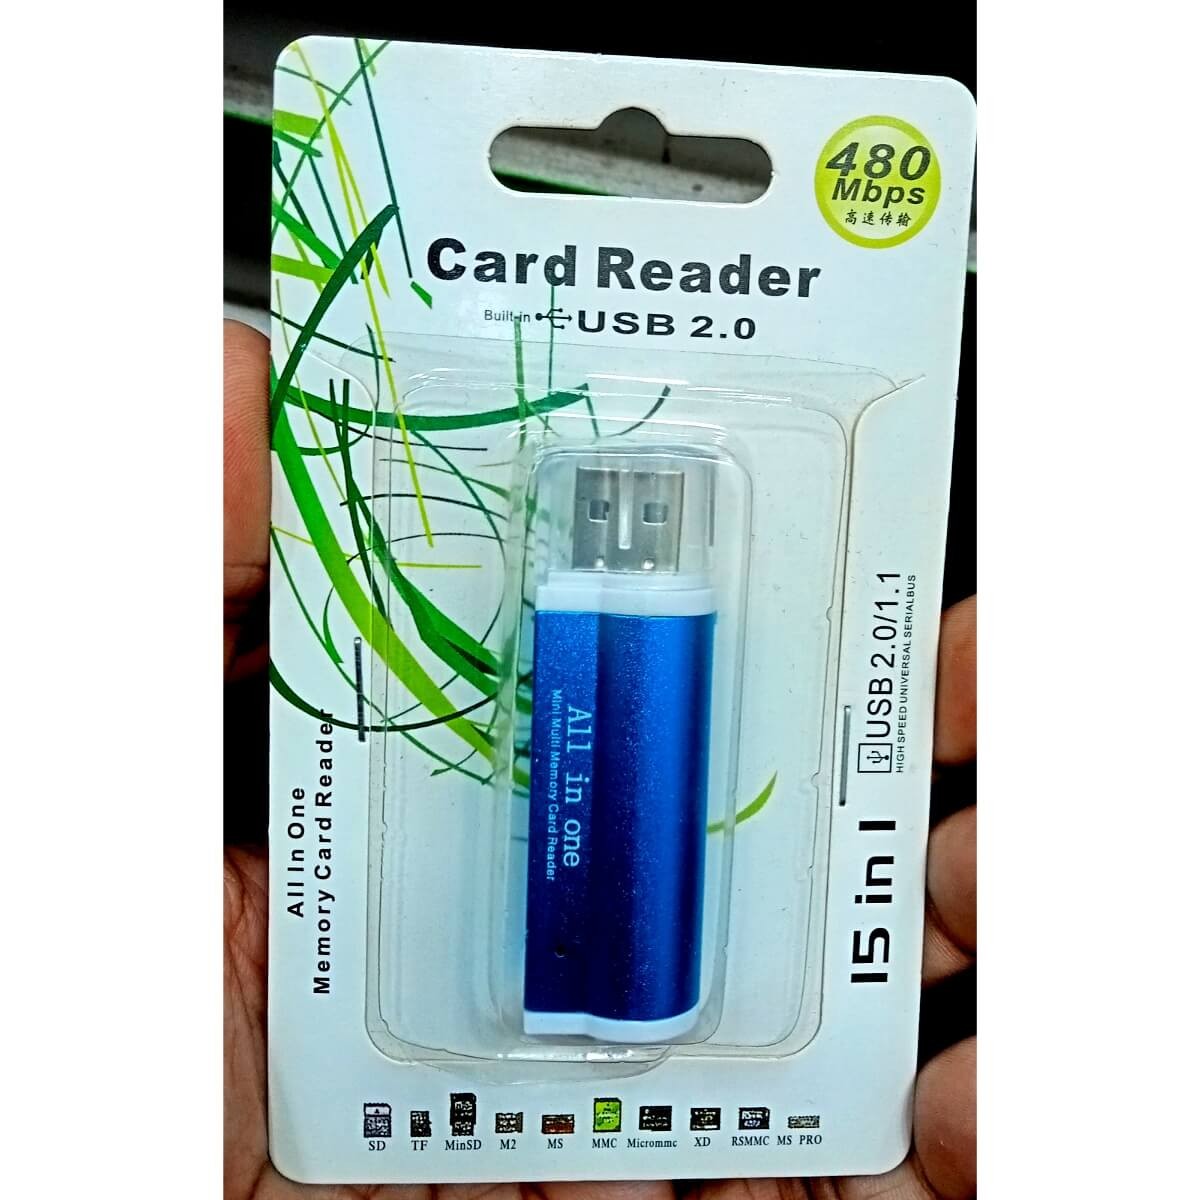 Card Reader USB 2 480MBPS BD